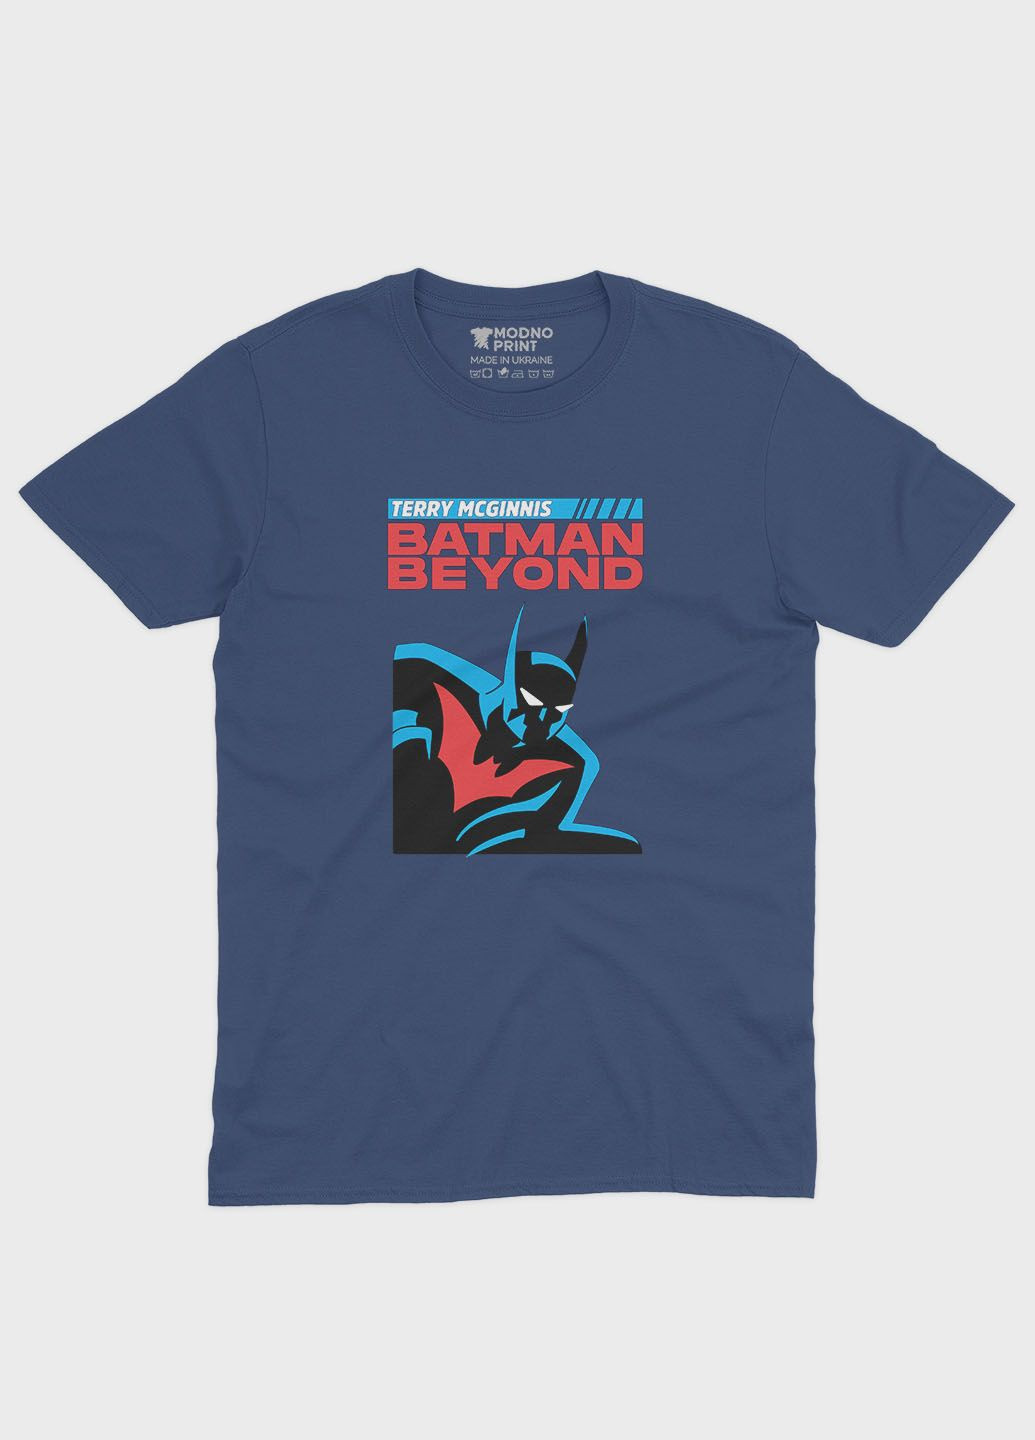 Темно-синяя демисезонная футболка для мальчика с принтом супергероя - бэтмен (ts001-1-nav-006-003-017-b) Modno